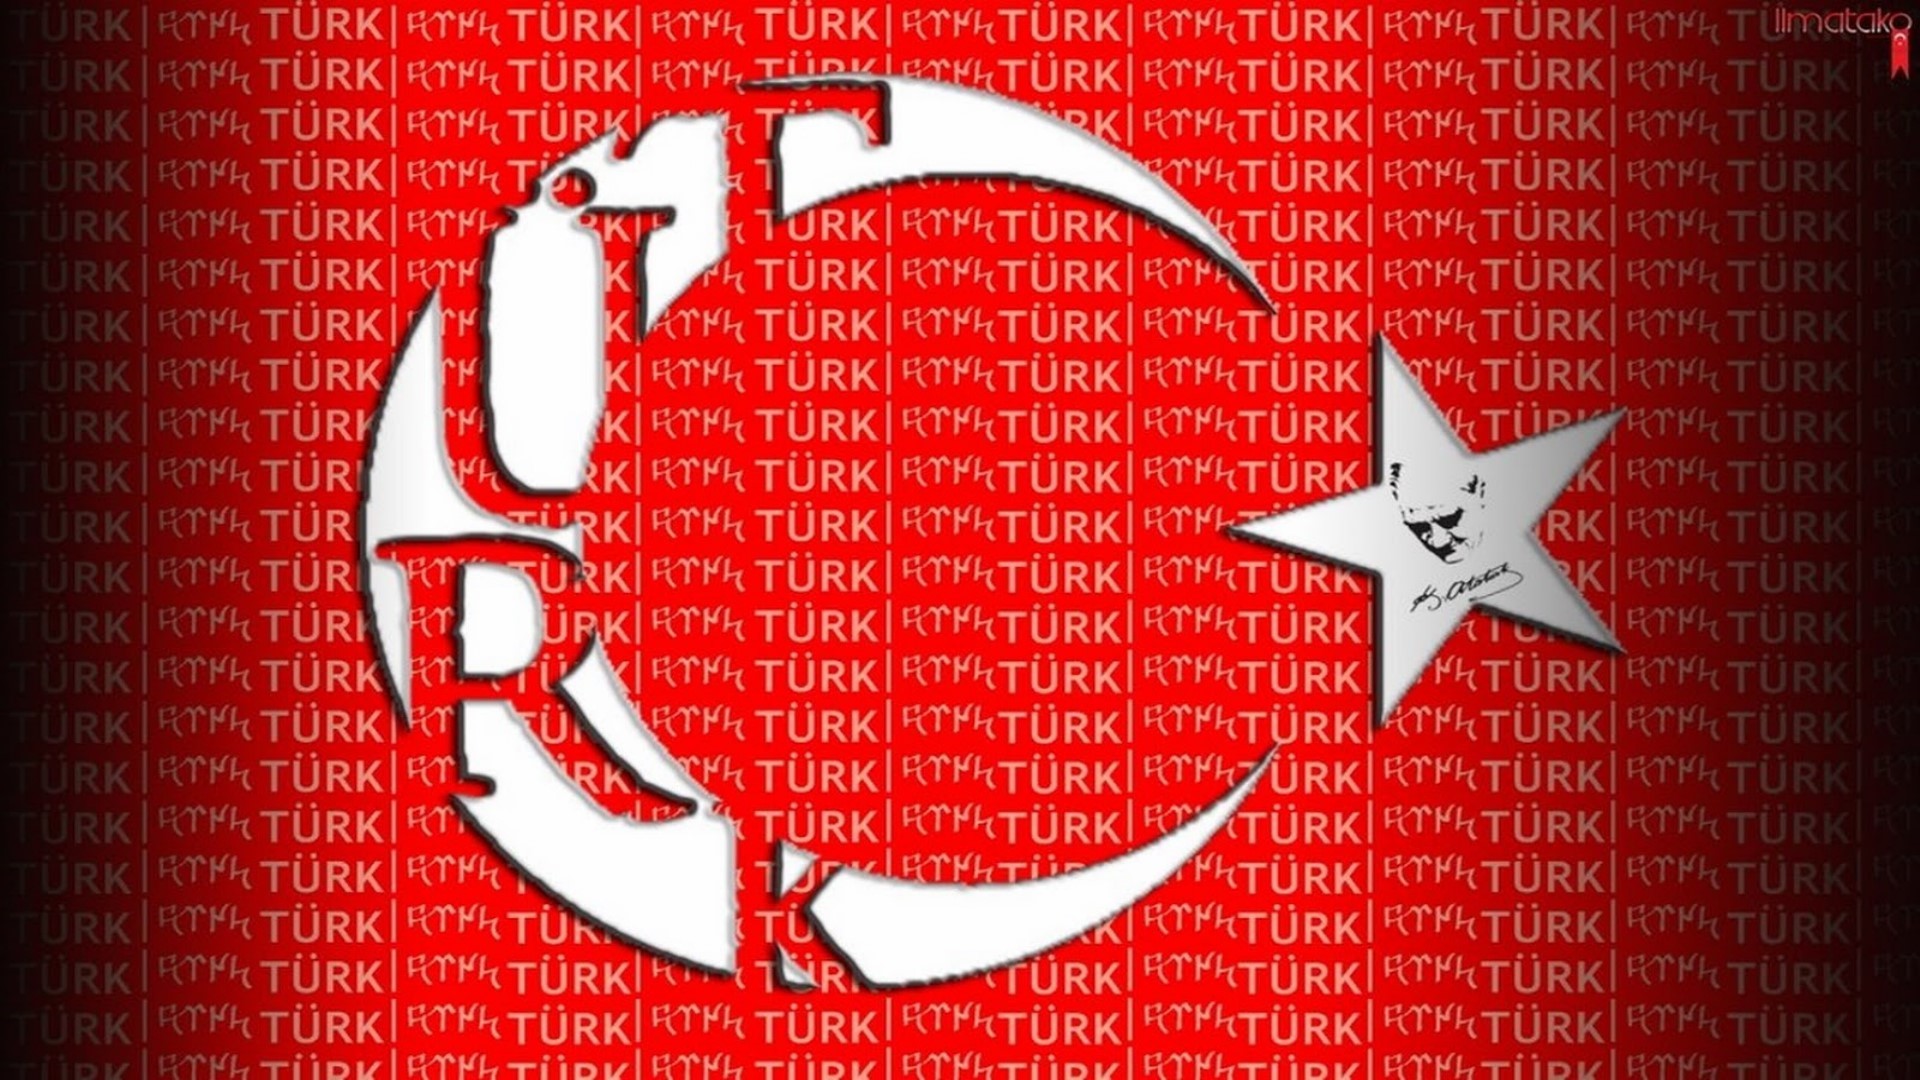 turk bayragi buyuk boy resmi 23